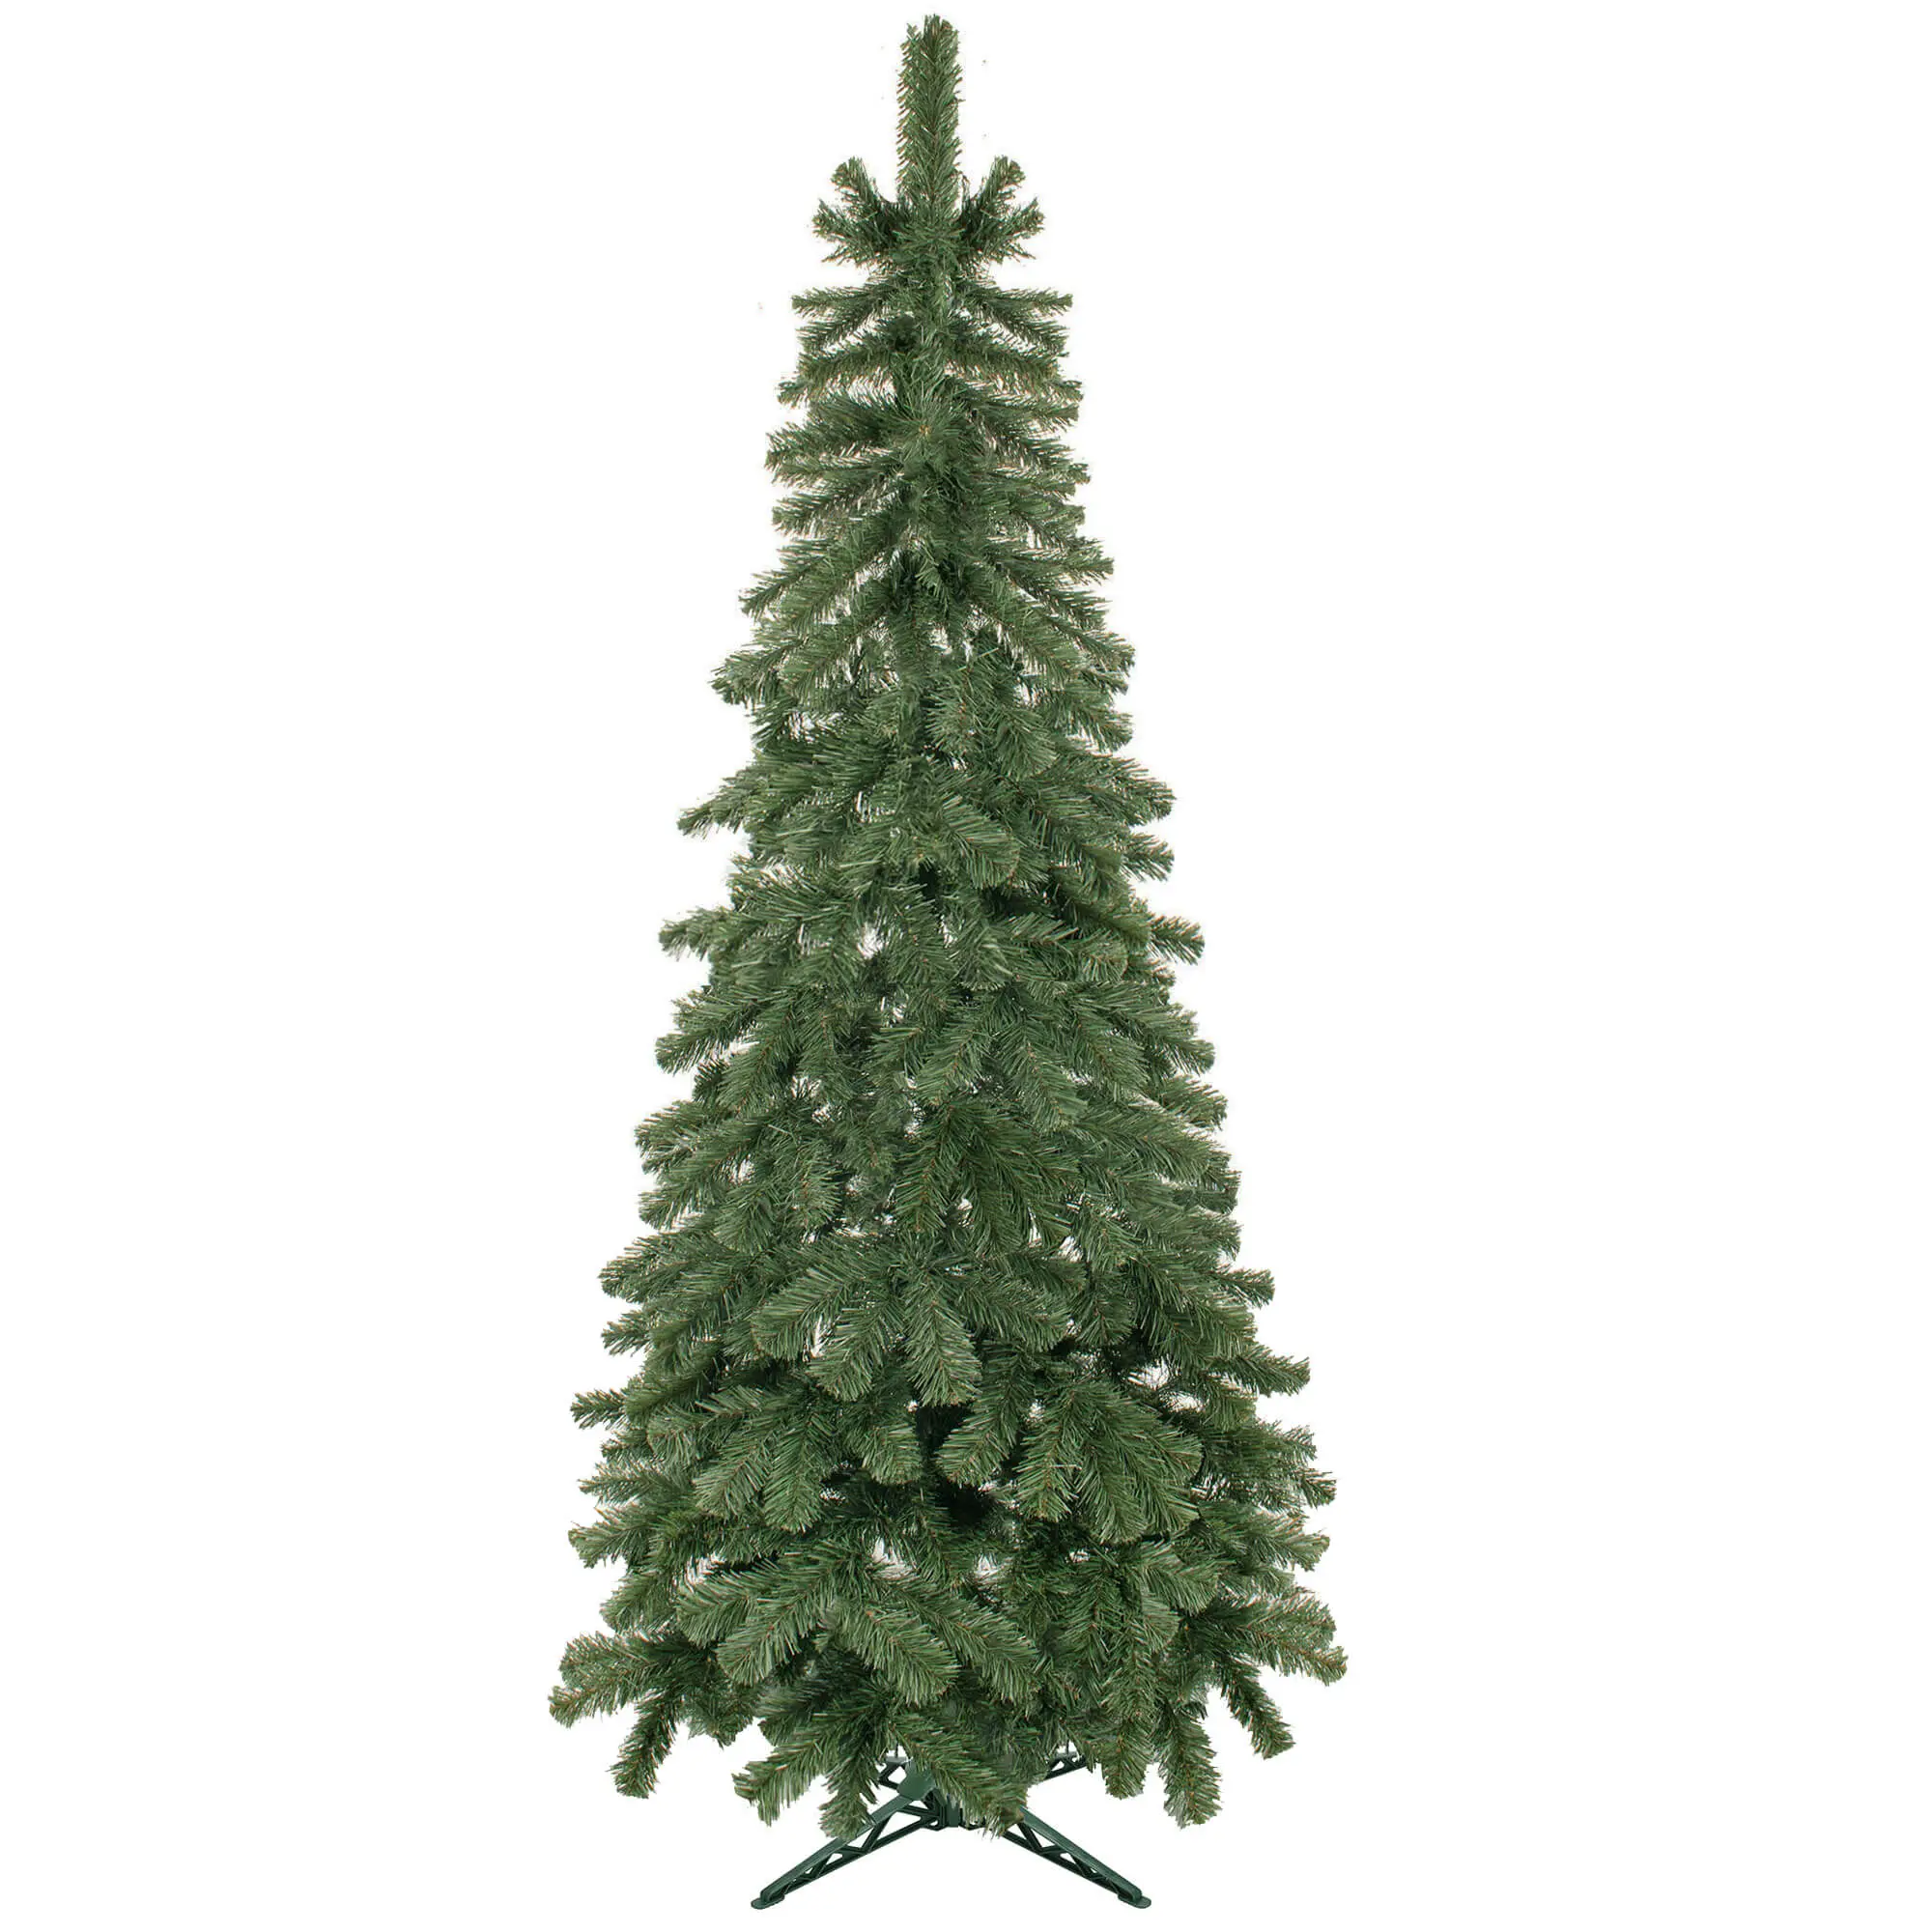 K眉nstlicher Weihnachtsbaum 150 cm